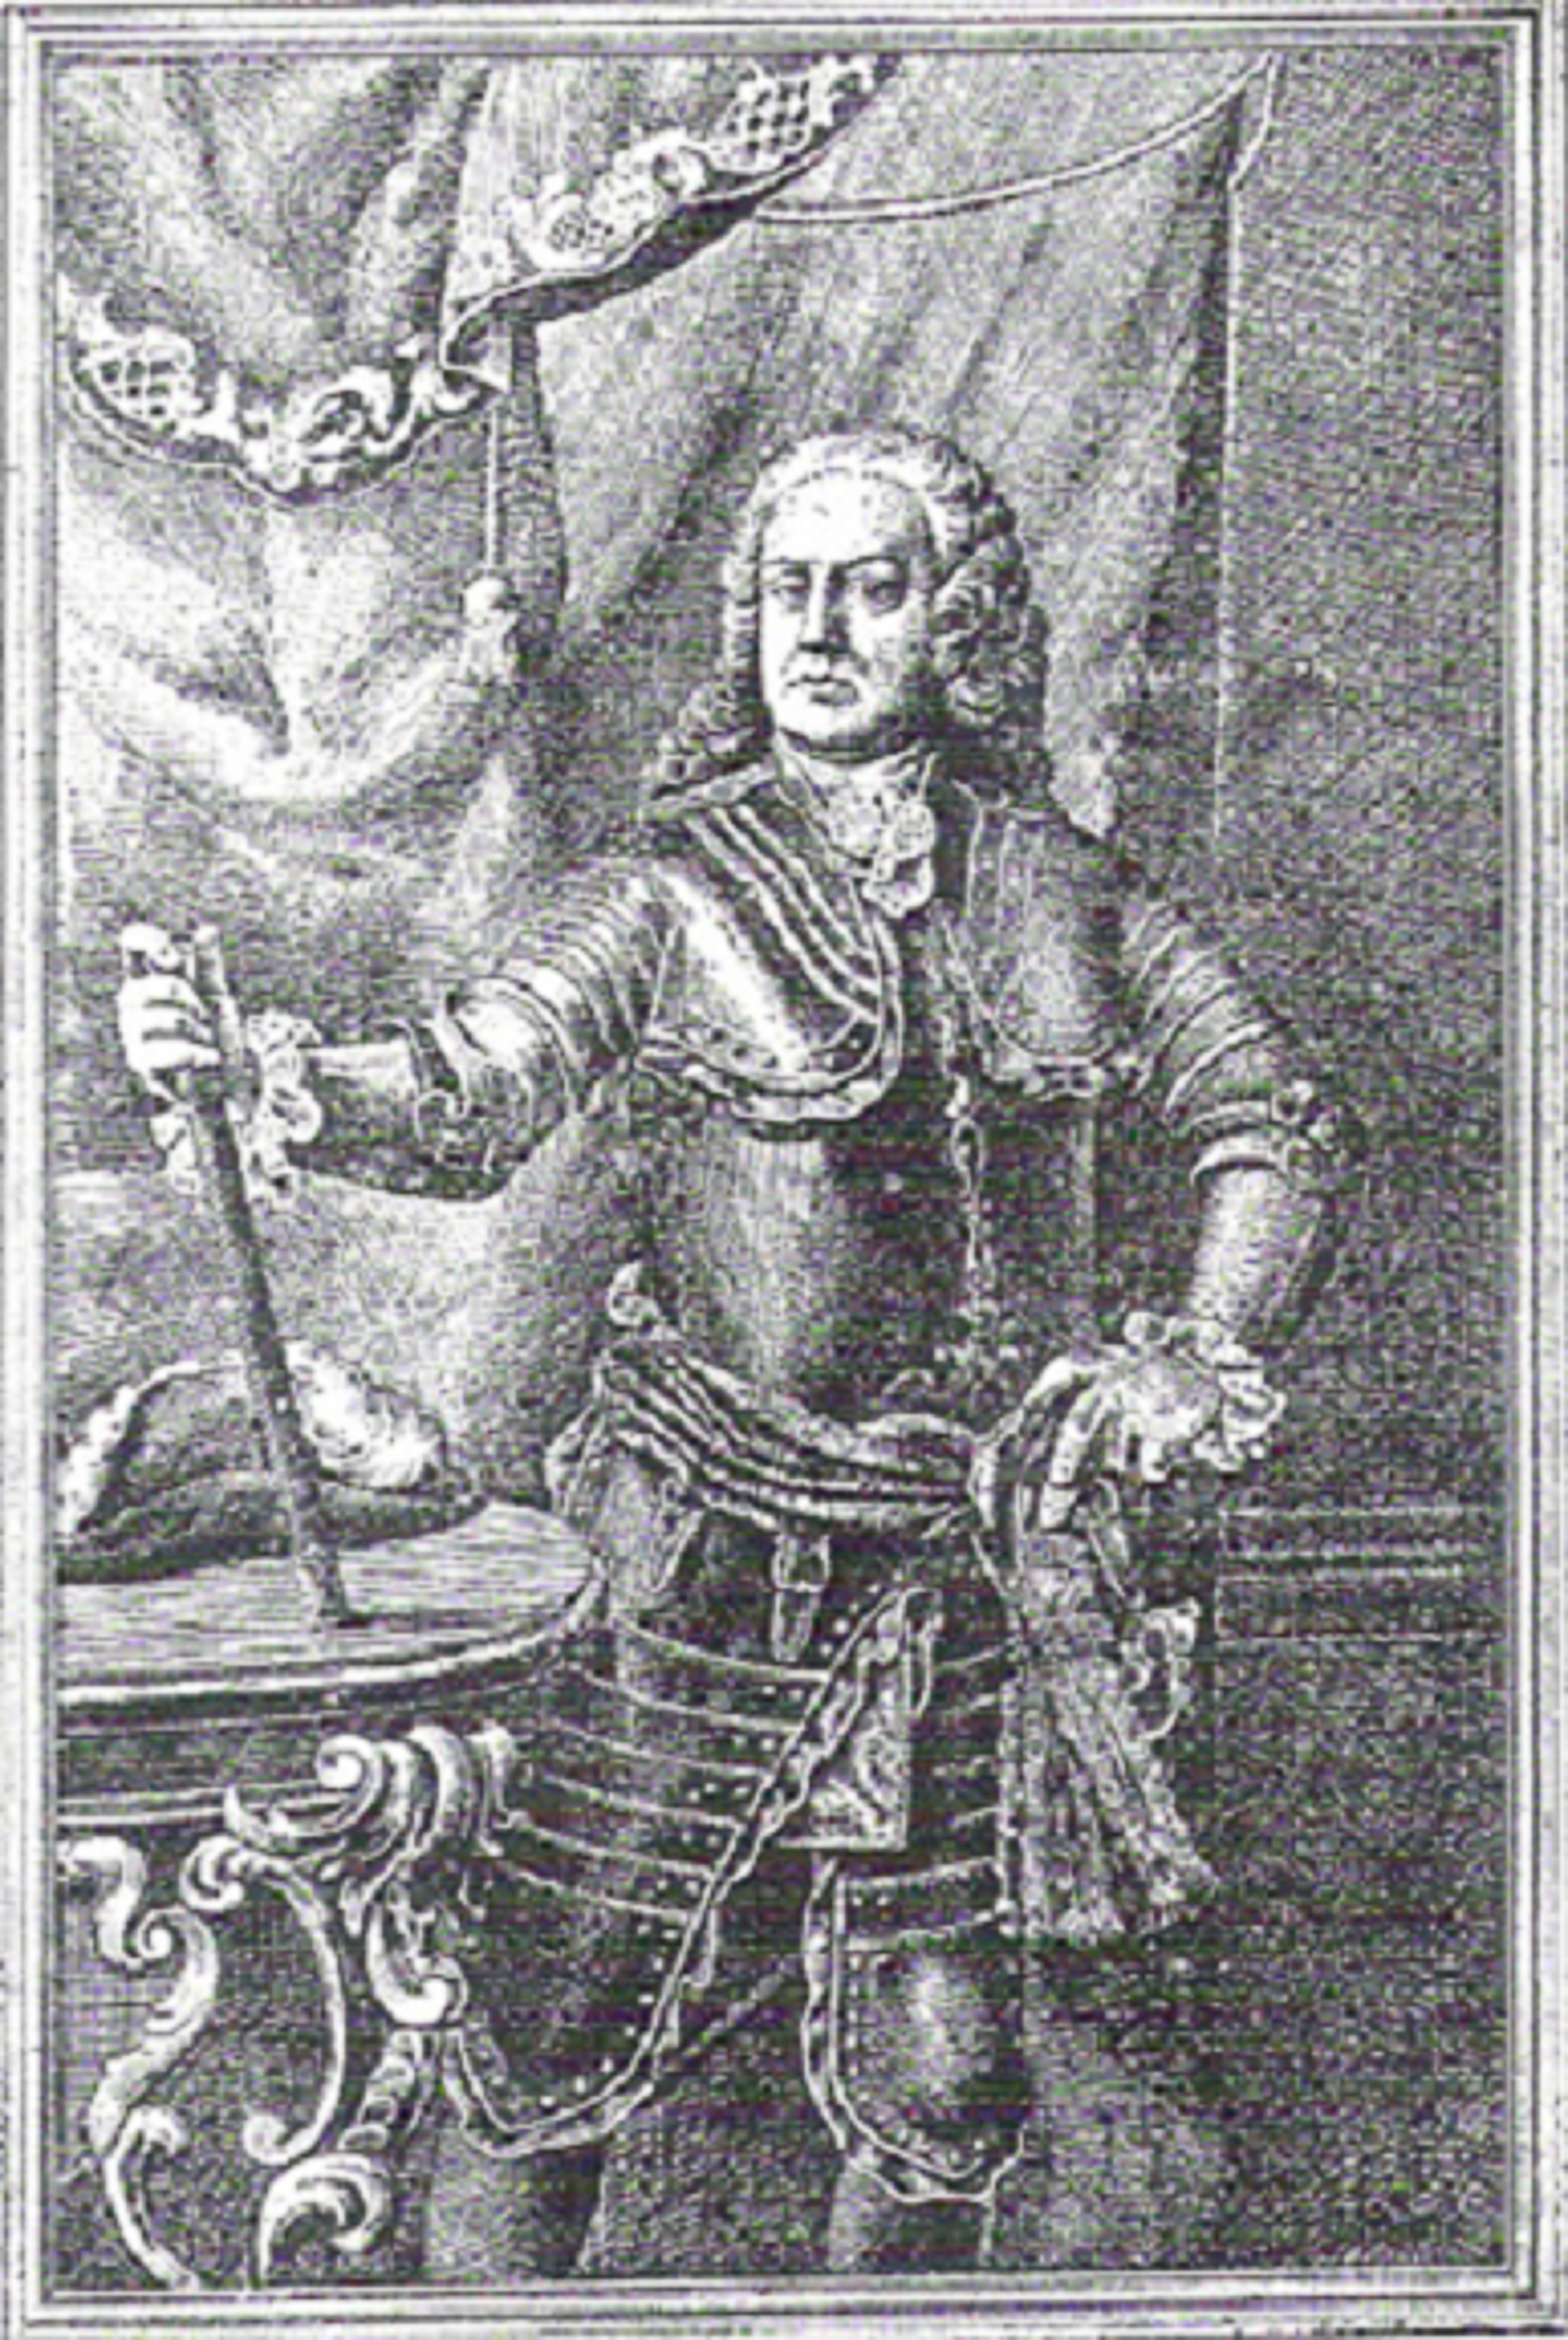 Nace Antoni de Villarroel, máxima autoridad militar de Barcelona en 1714